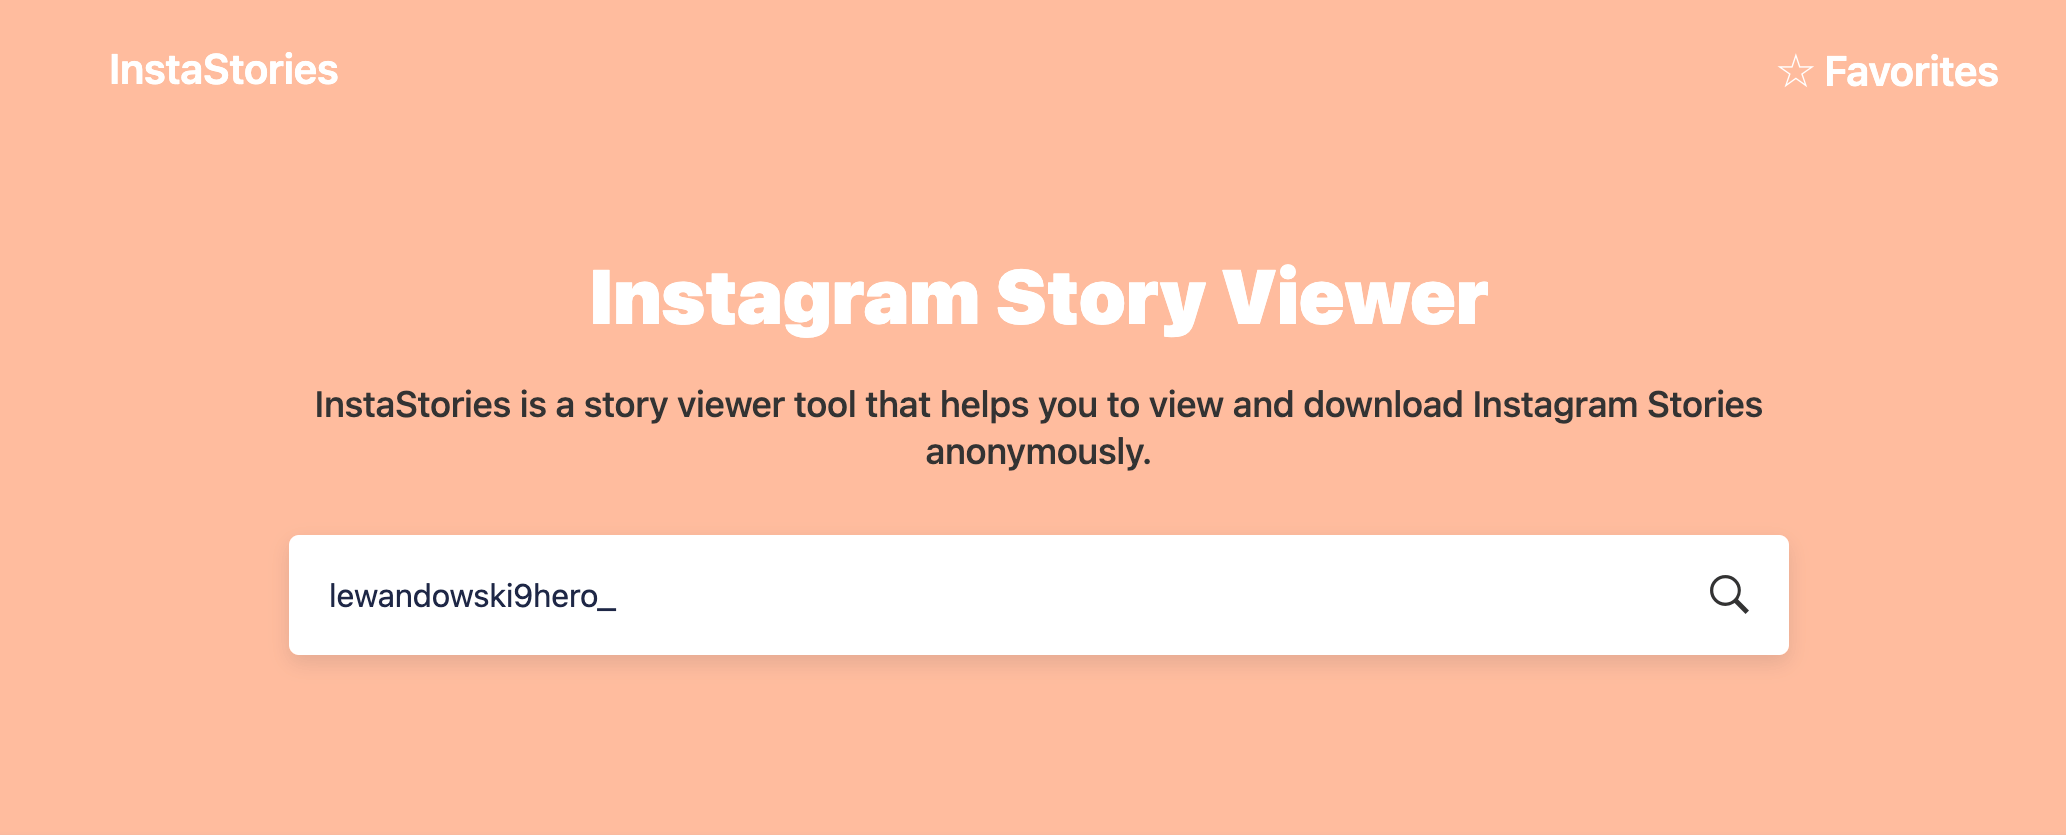  zobaczyć Instagram Stories bez konta InstaStories.net - InFejm.pl